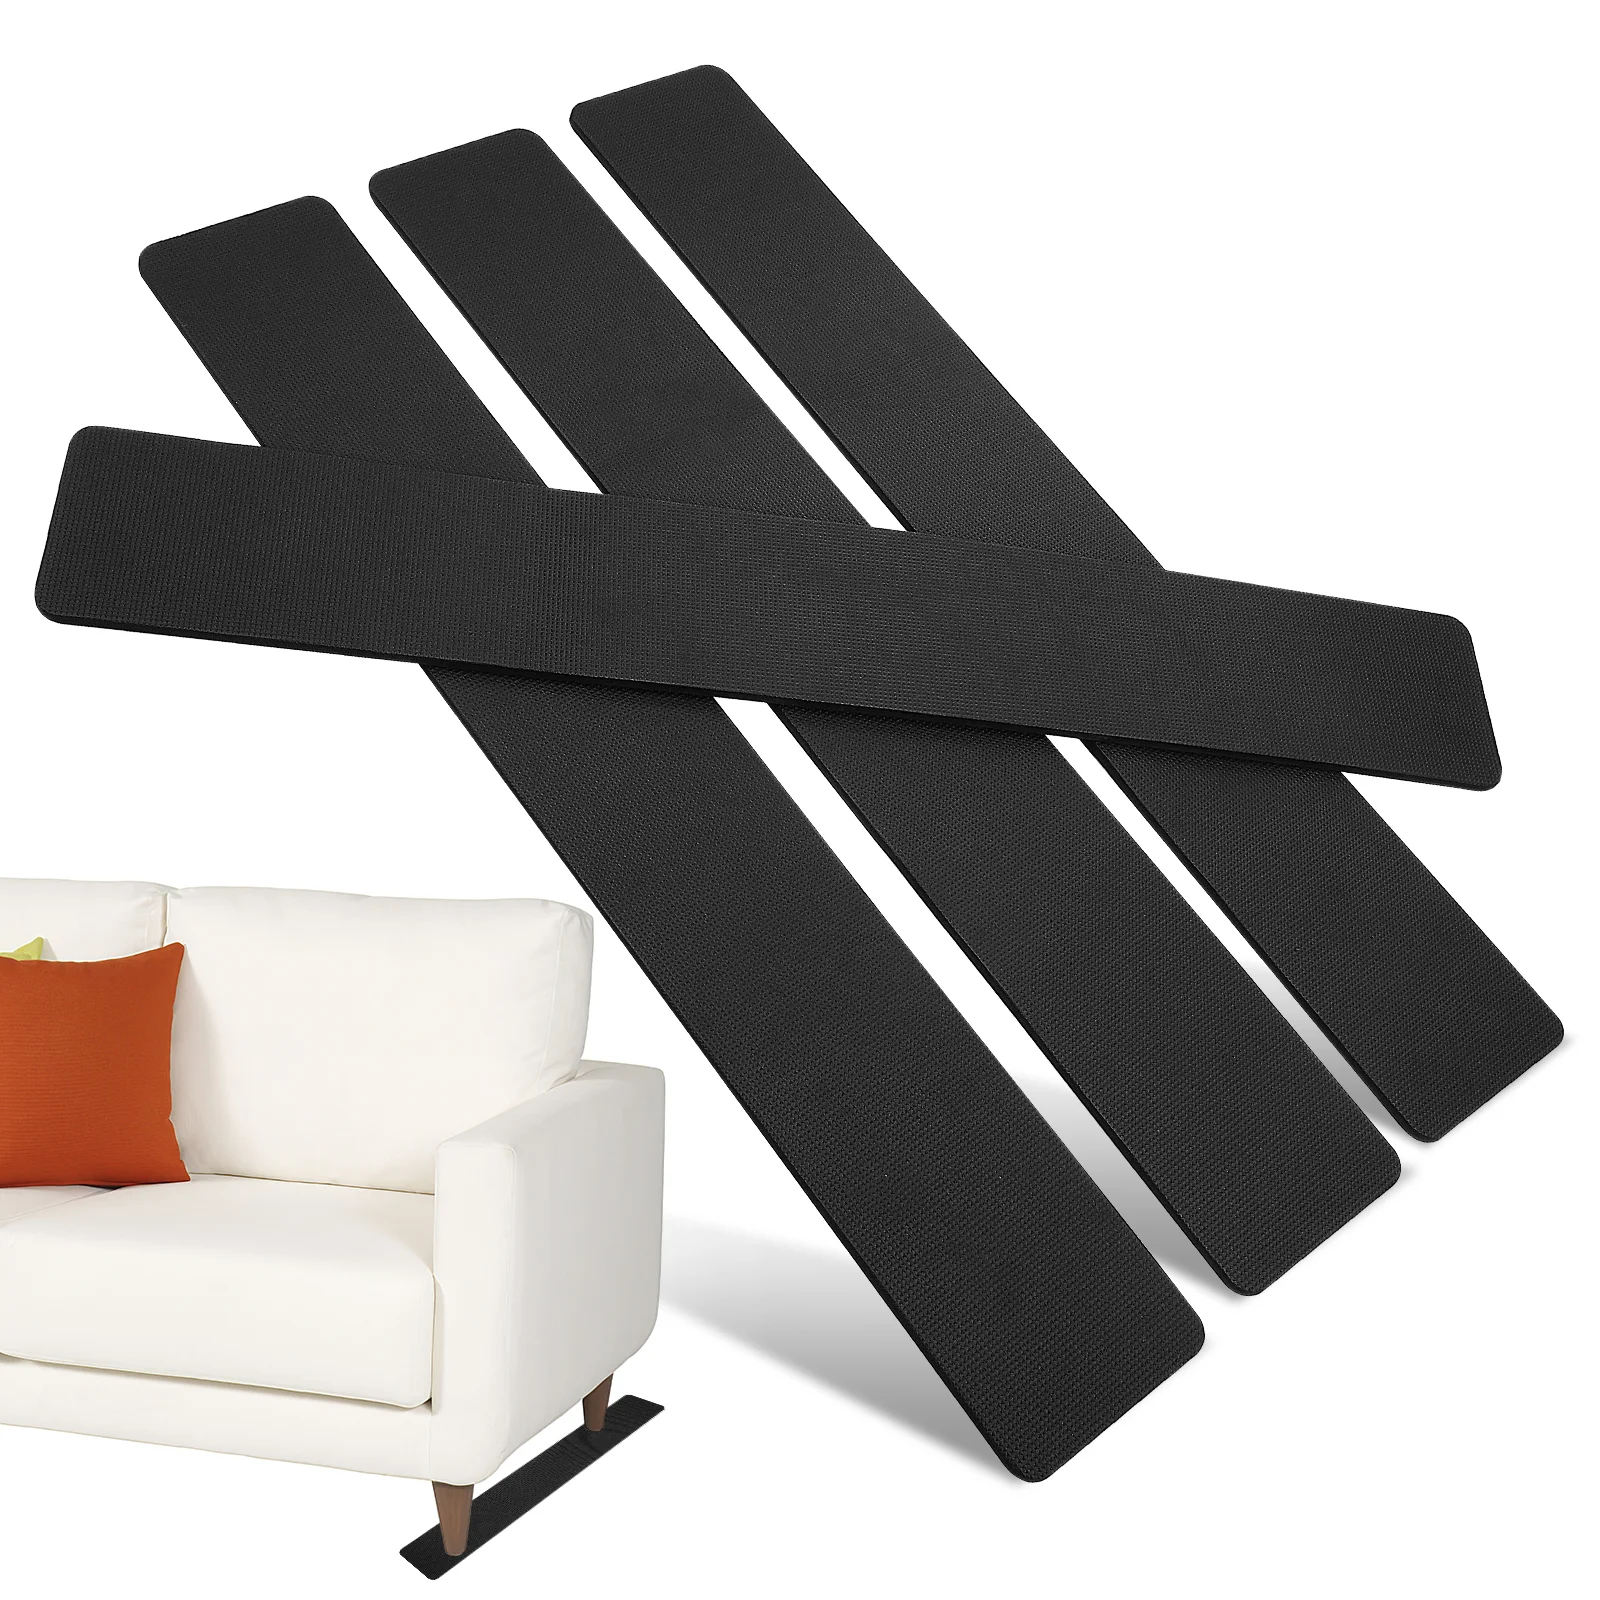 

4 Pcs Non-slip Mat Couch Slide Stopper Floor Protectors Furniture Legs Pads Hardwood Floors Stoppers Prevent Sliding Sofa